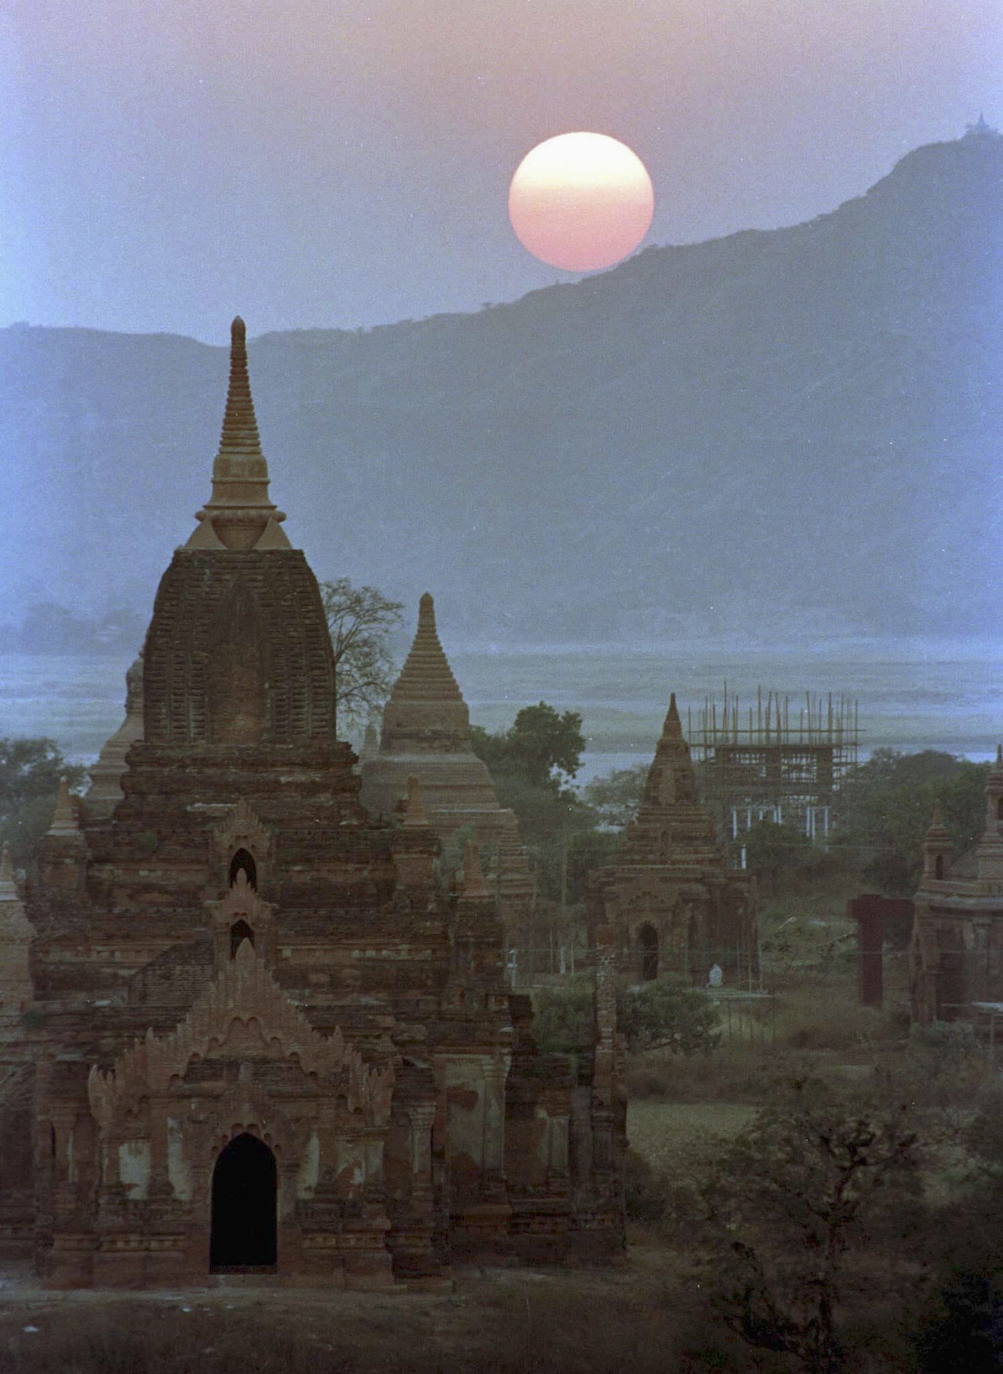 Los templos de Angkor Wat, en la región de Camboya, son considerados como el mayor complejo arqueológico del sureste asiático, permanecieron desconocidos al mundo occidental hasta mediados del siglo XX. El territorio fue, en el siglo primero de nuestra era, el exótico país Jemer. La tradición estipulaba que cada rey debía erigir un nuevo templo a Shiva (el dios destructor) o a Vishnu (el guardian) según le perteneciera, y que a su muerte le serviría de tumba. Así empezaron las edificaciones religiosas a los dioses hindúes, concebidas como una representación simbólica del universo. Su abandono sigue siendo uno de los misterios que envuelven estas reliquias. 